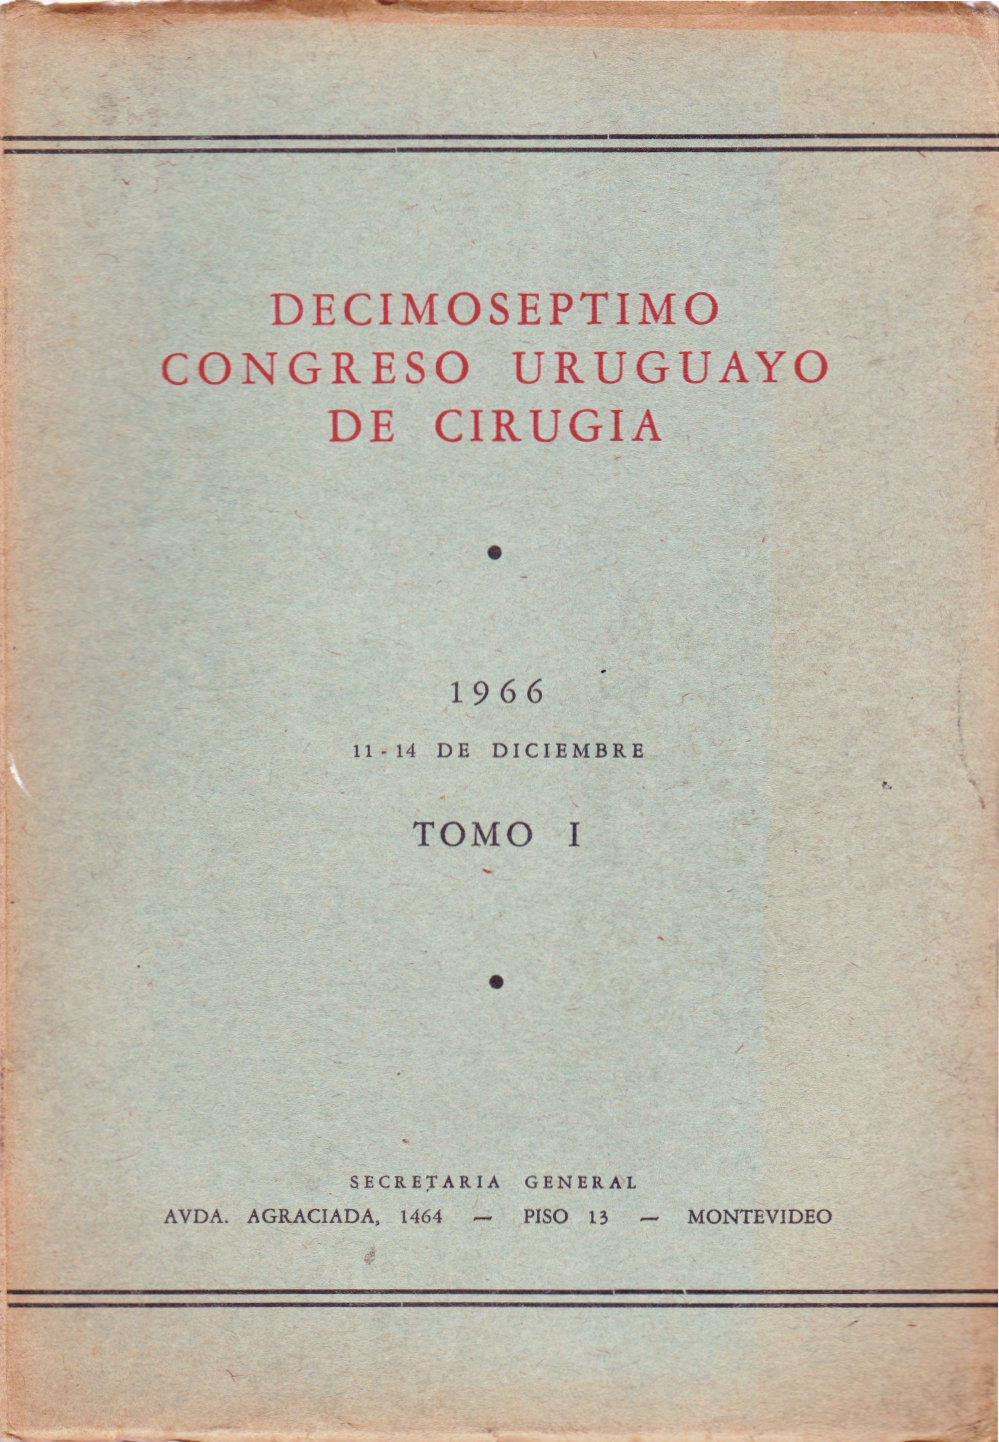 					Ver Núm. 1 (1966): Congresos Uruguayos de Cirugía
				